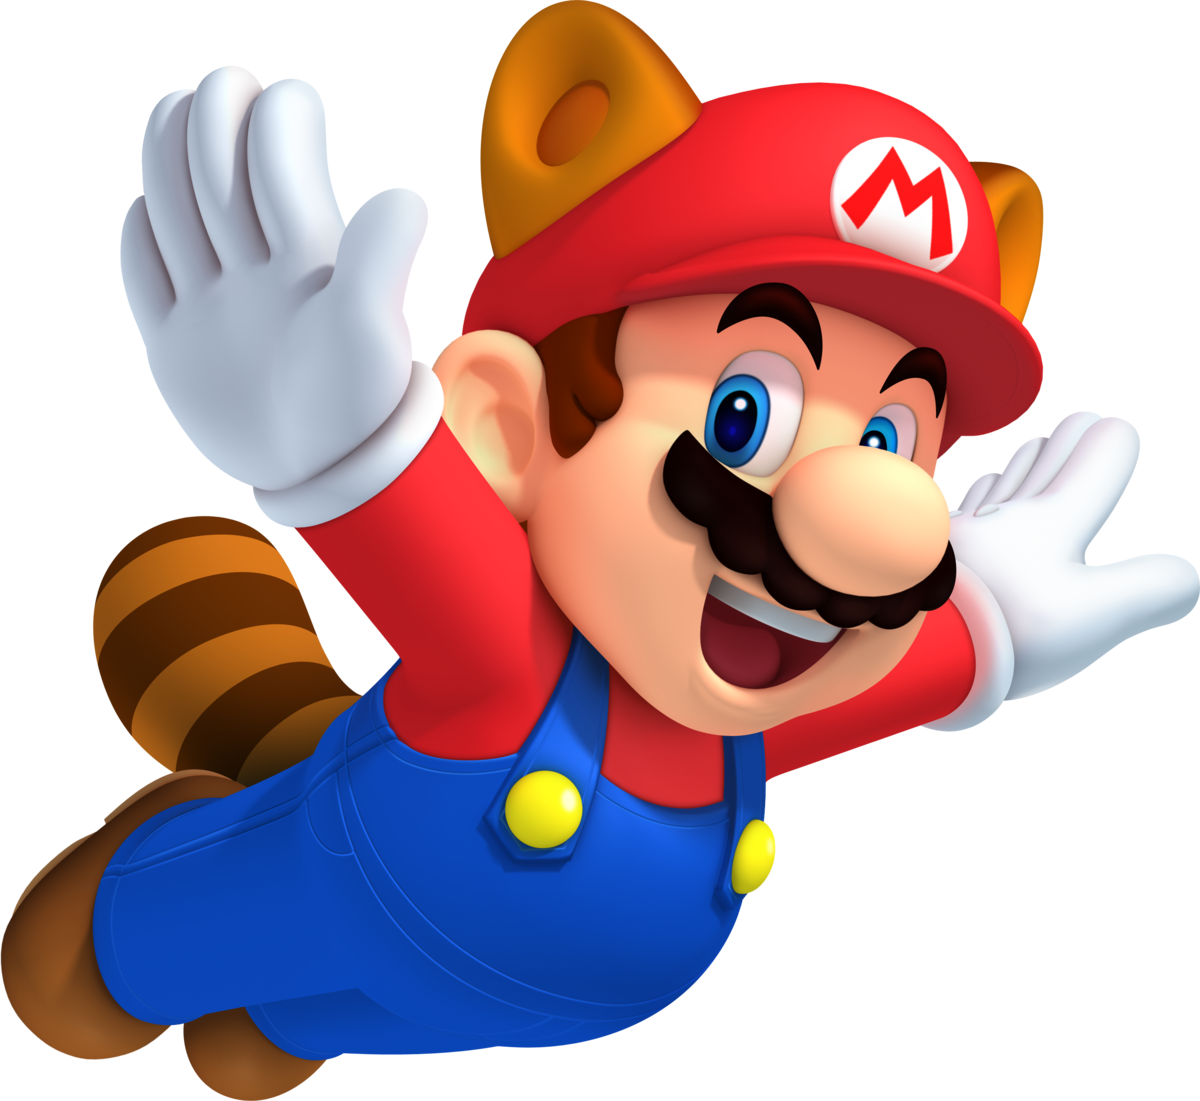 Block - Super Mario Wiki, the Mario encyclopedia